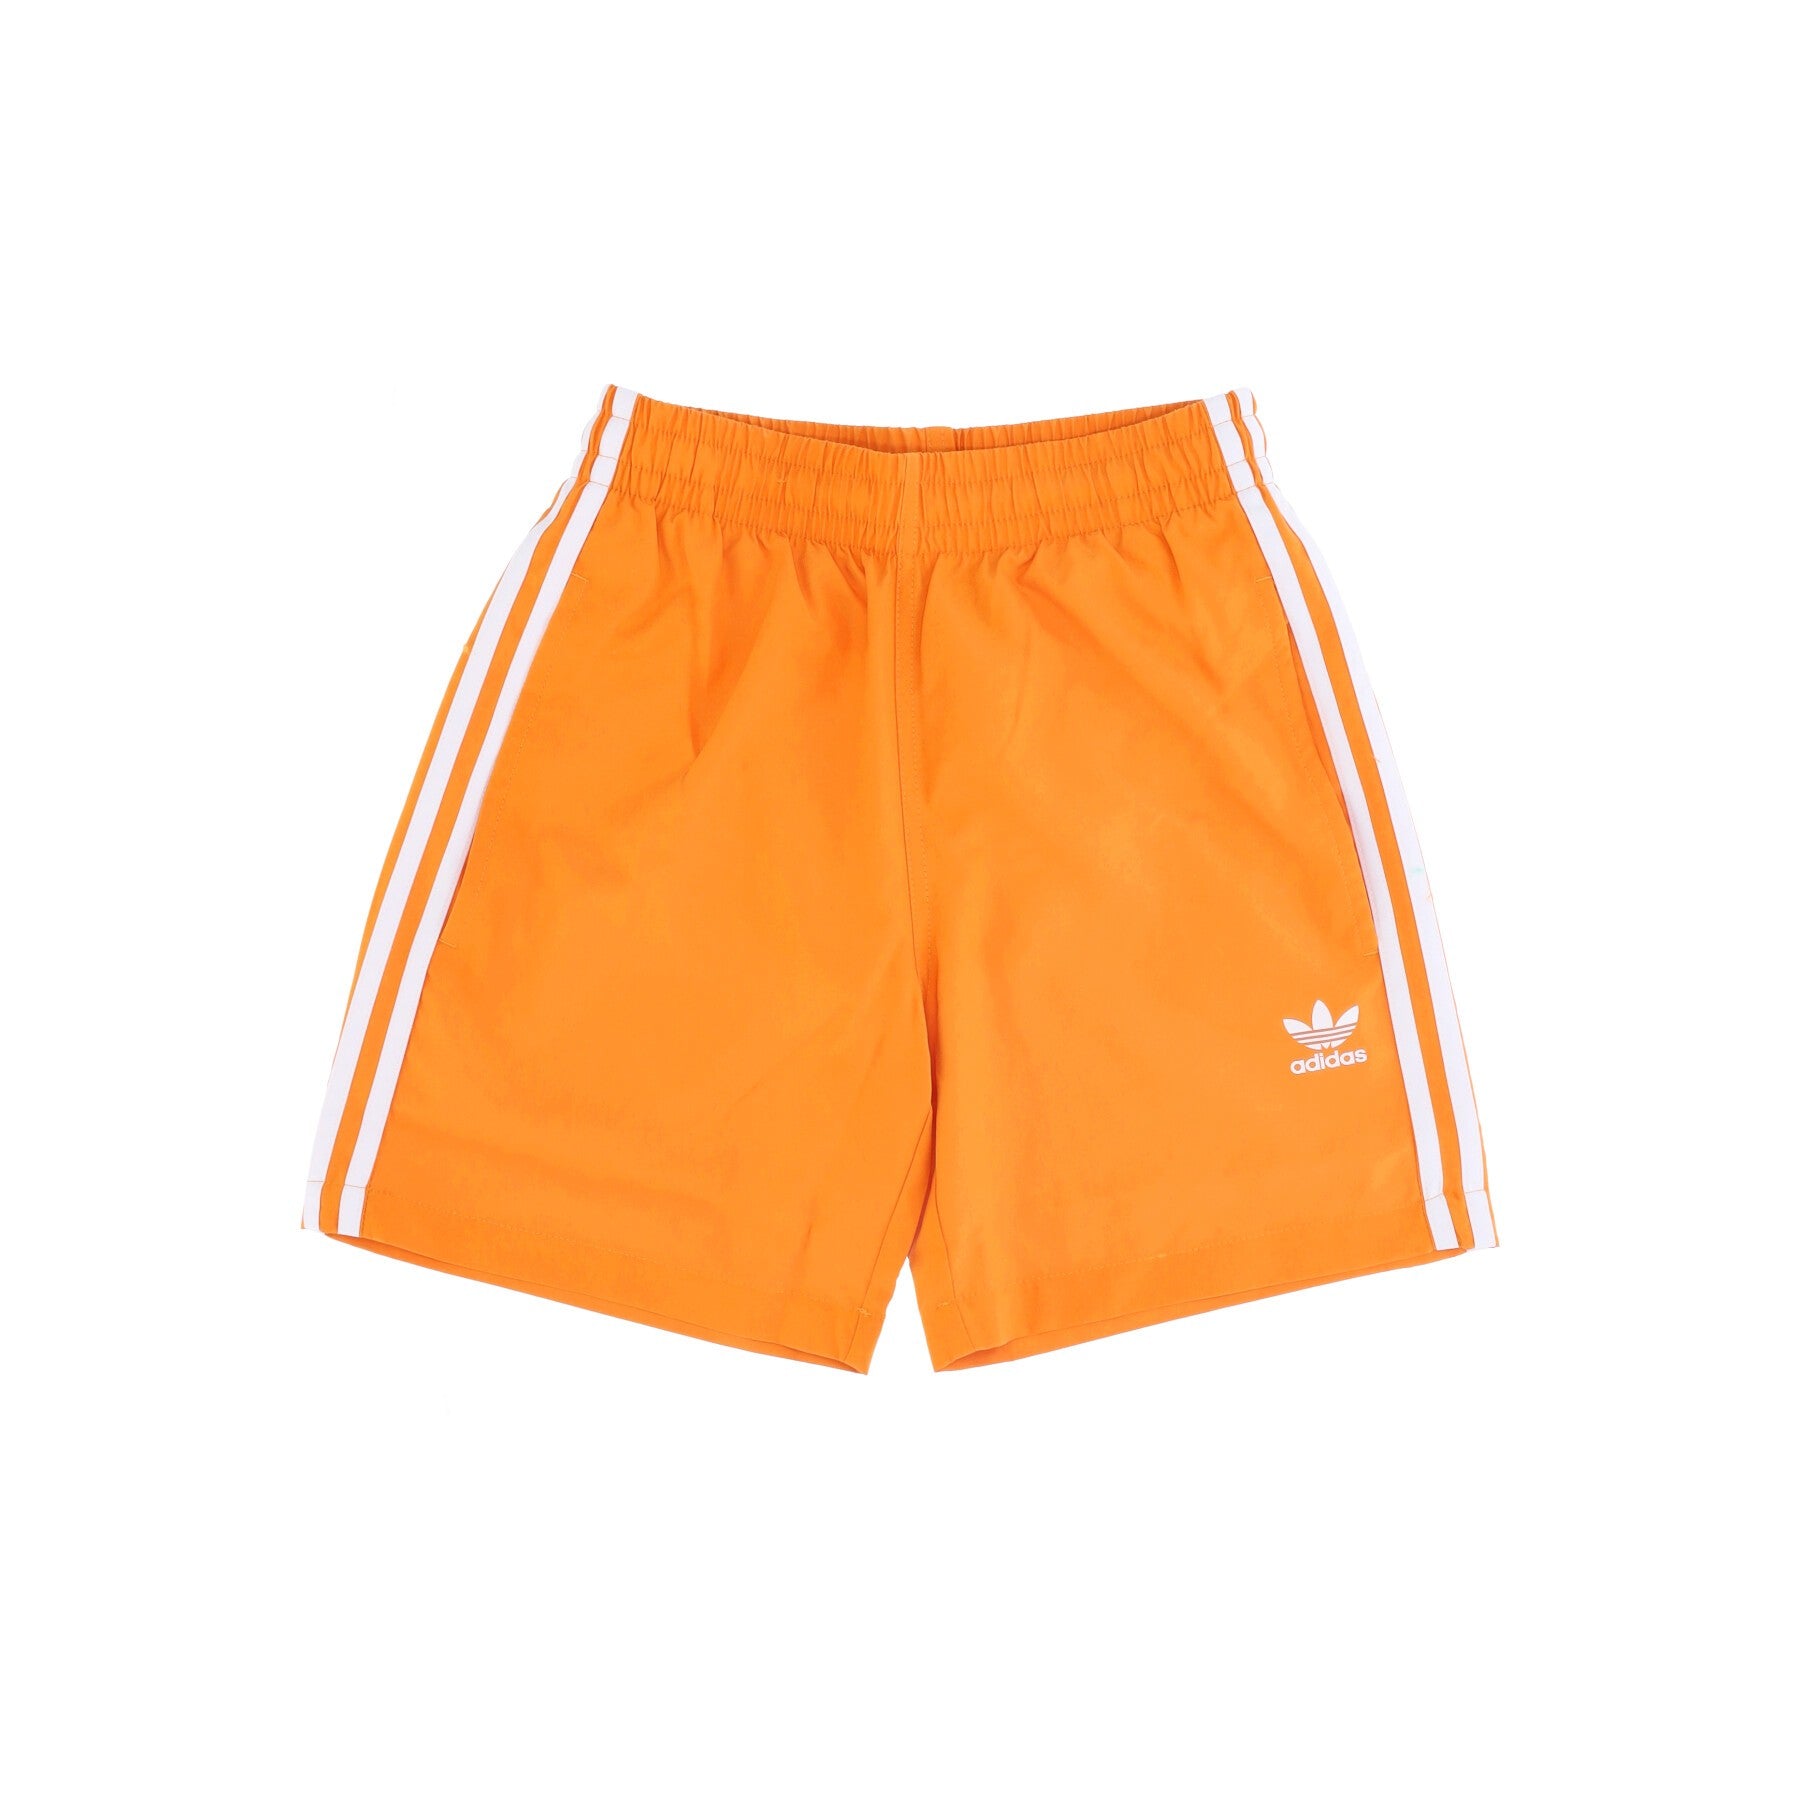 Adidas, Costume Pantaloncino Uomo 3-stripes Swims, Orange